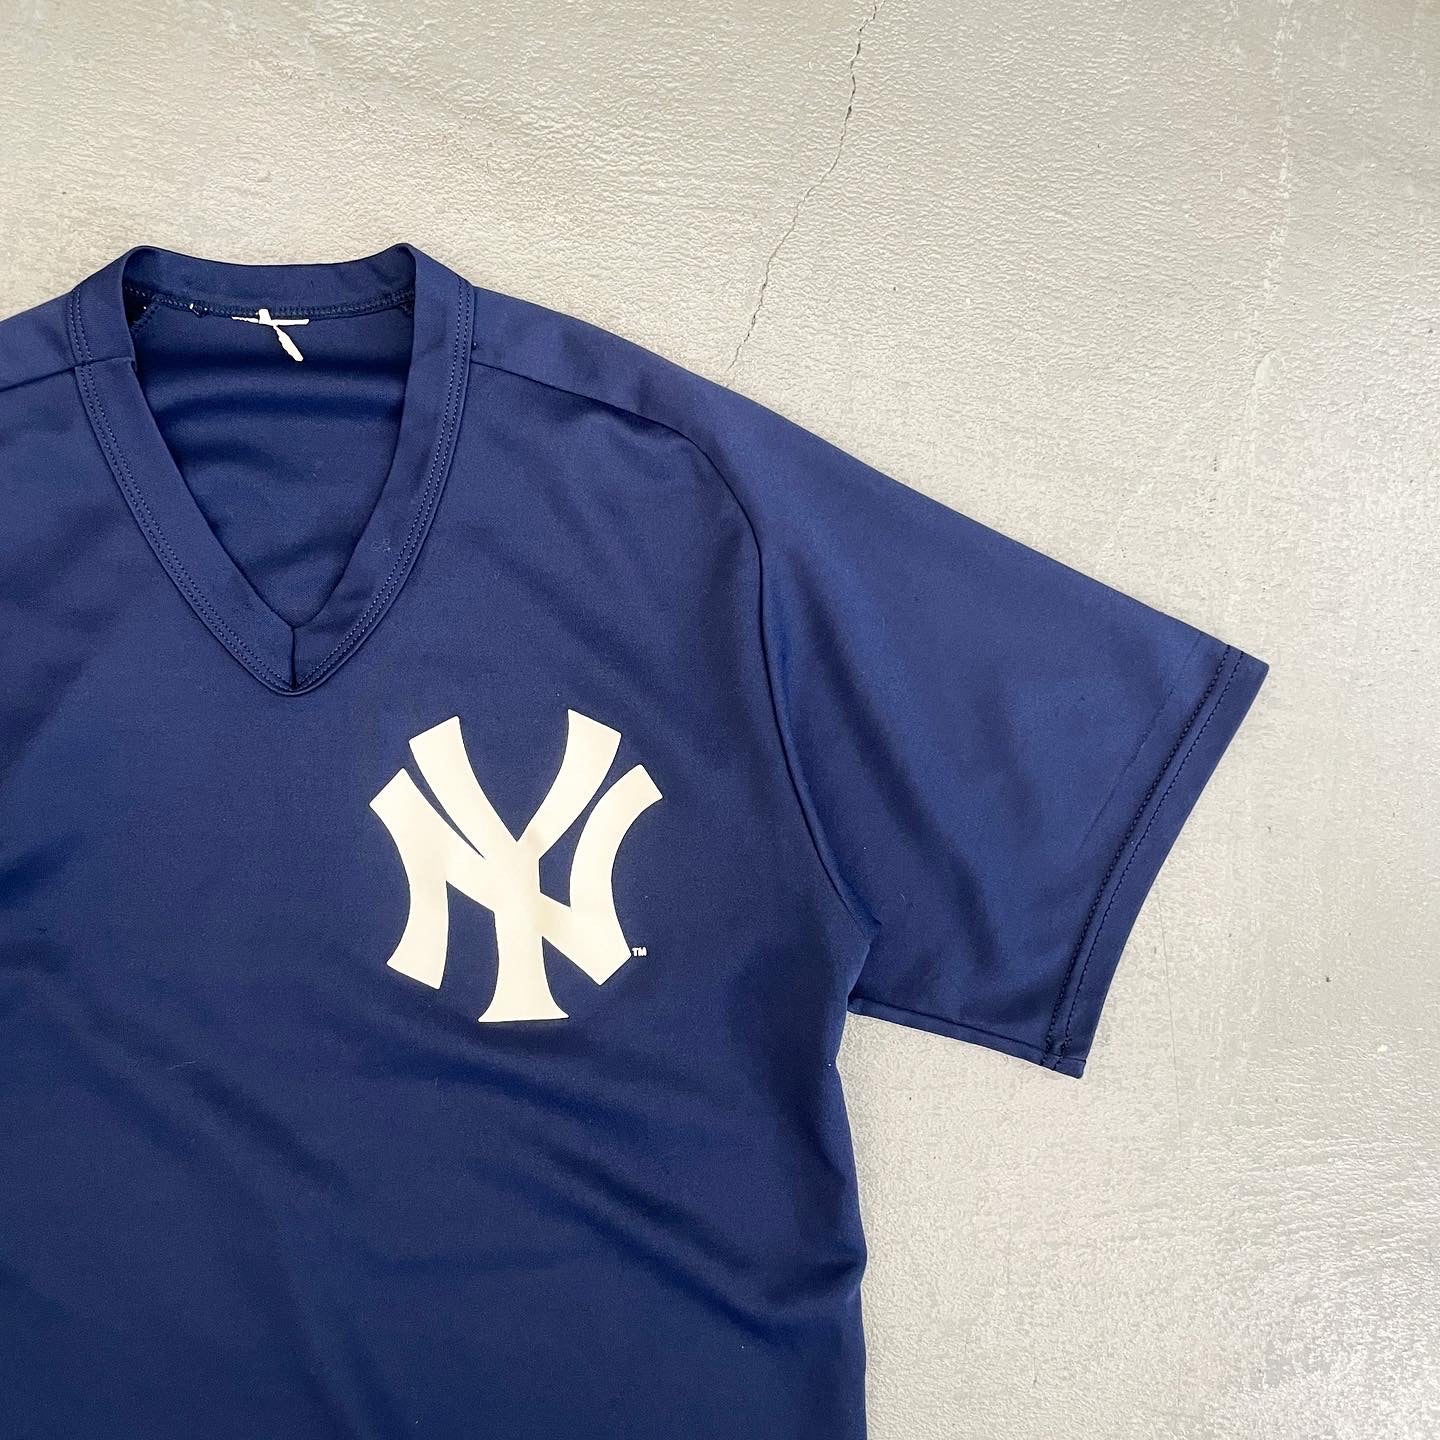 New Yoek Yankees Jersey by Majestic